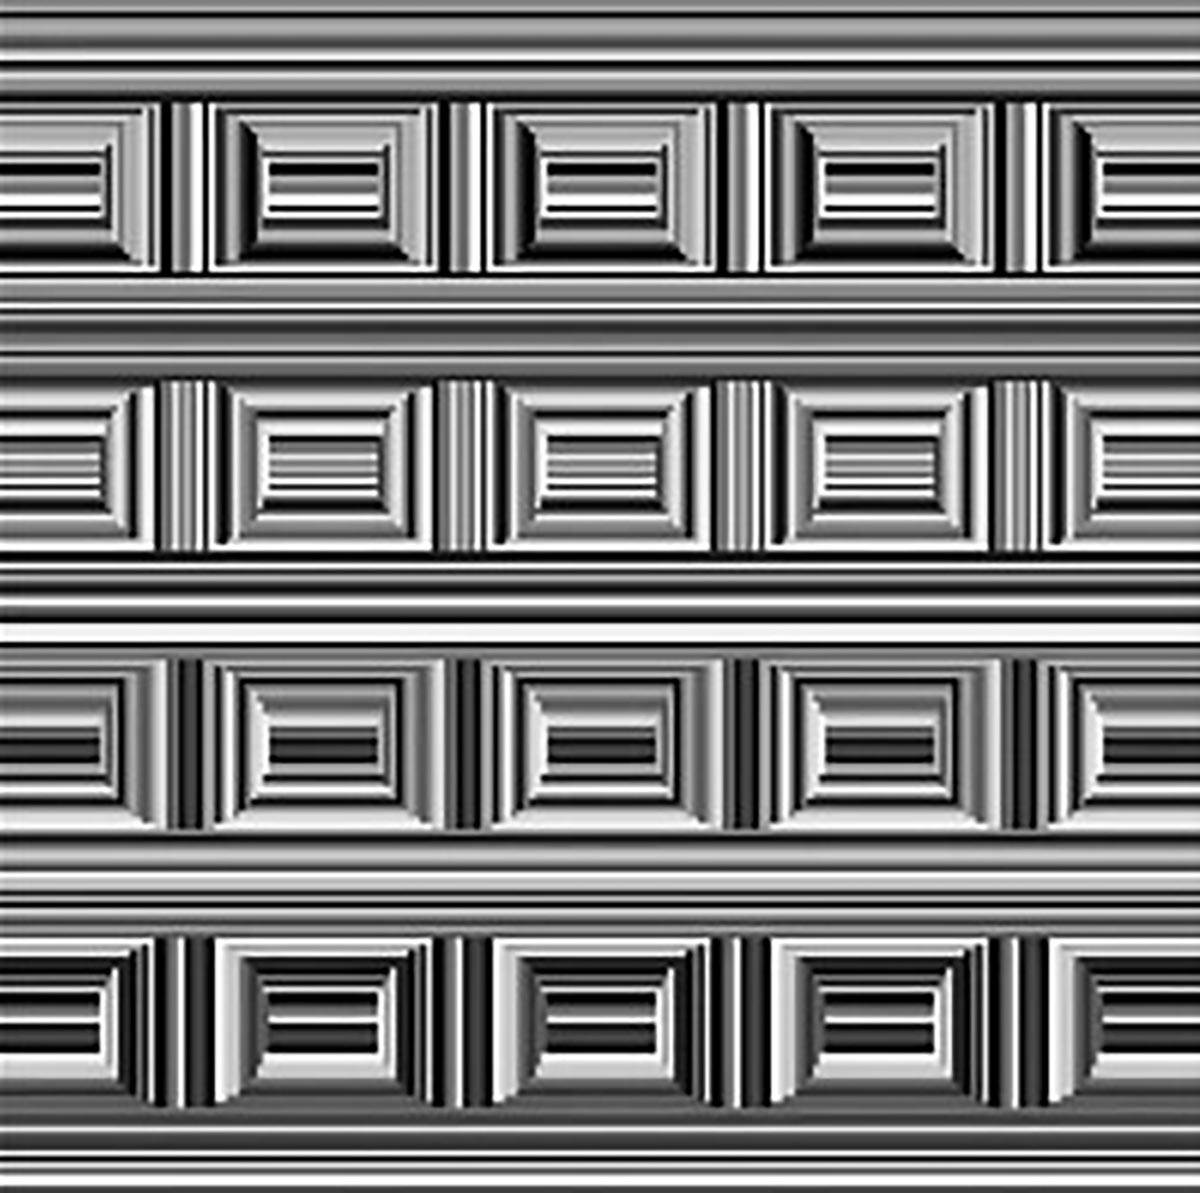  Optička iluzija krugovi u kvadratu 